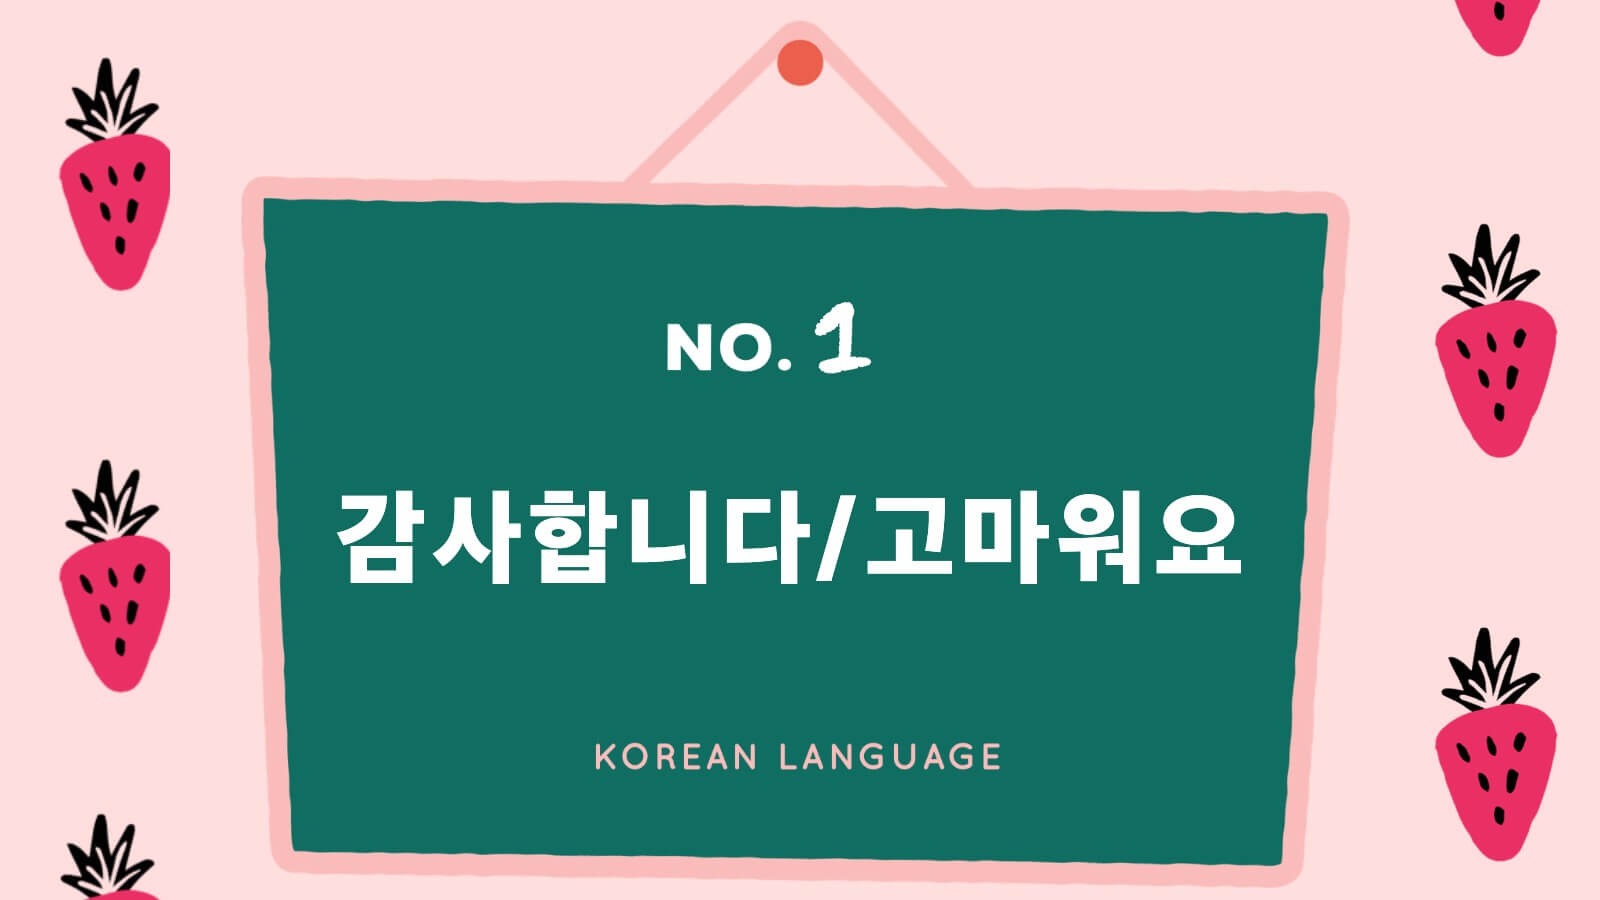 シーン別9選 カムサハムニダ以外の韓国語での ありがとう を使い分けよう Ppyong